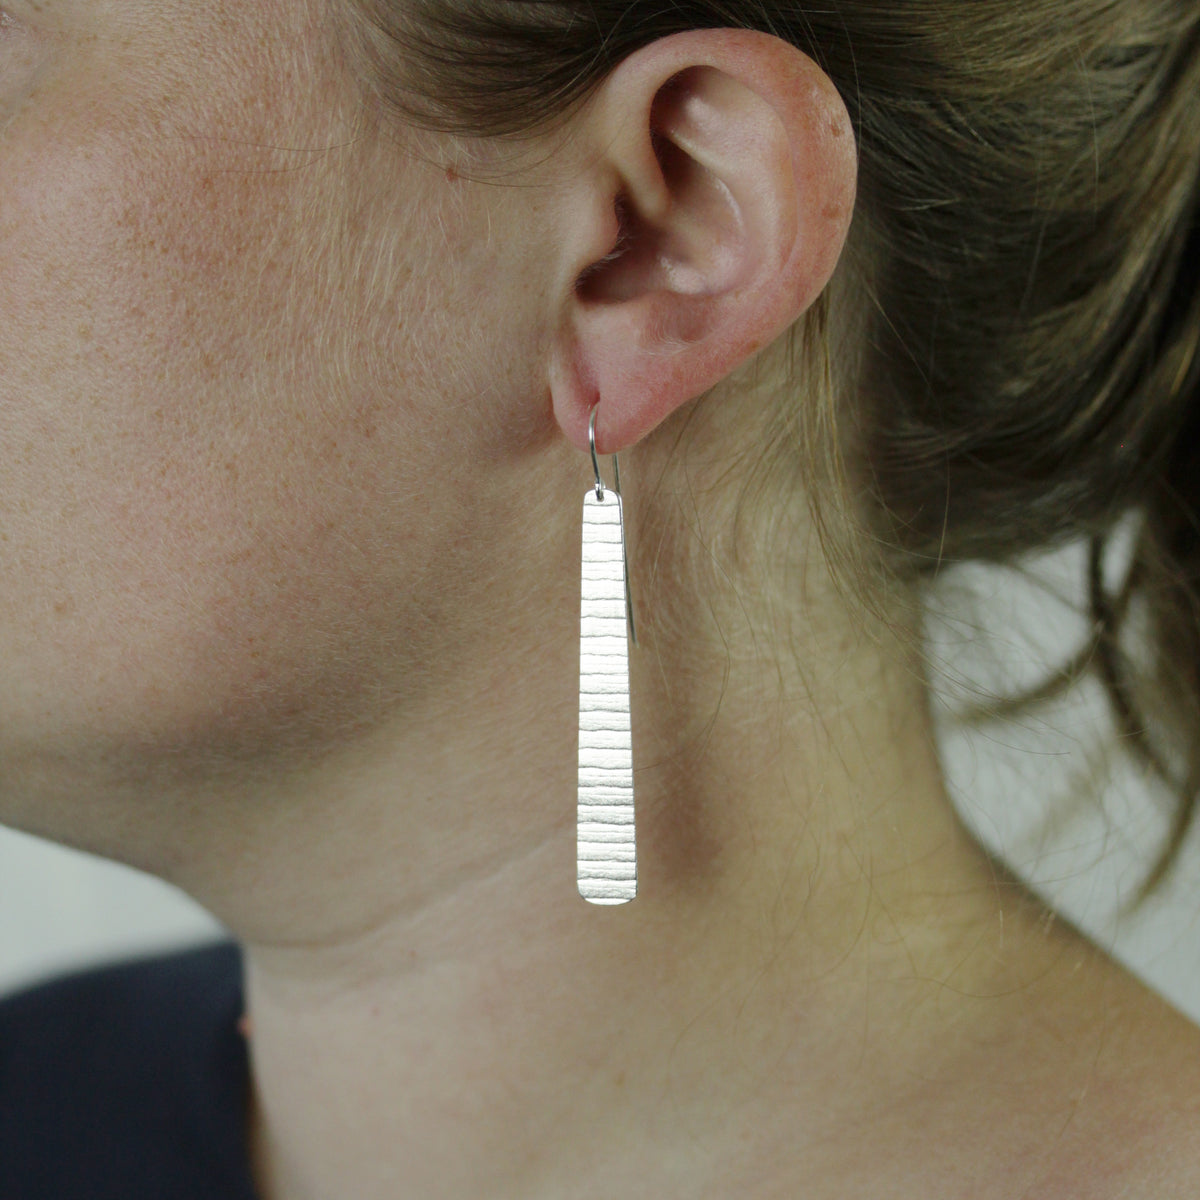 Long silver stripe earrings